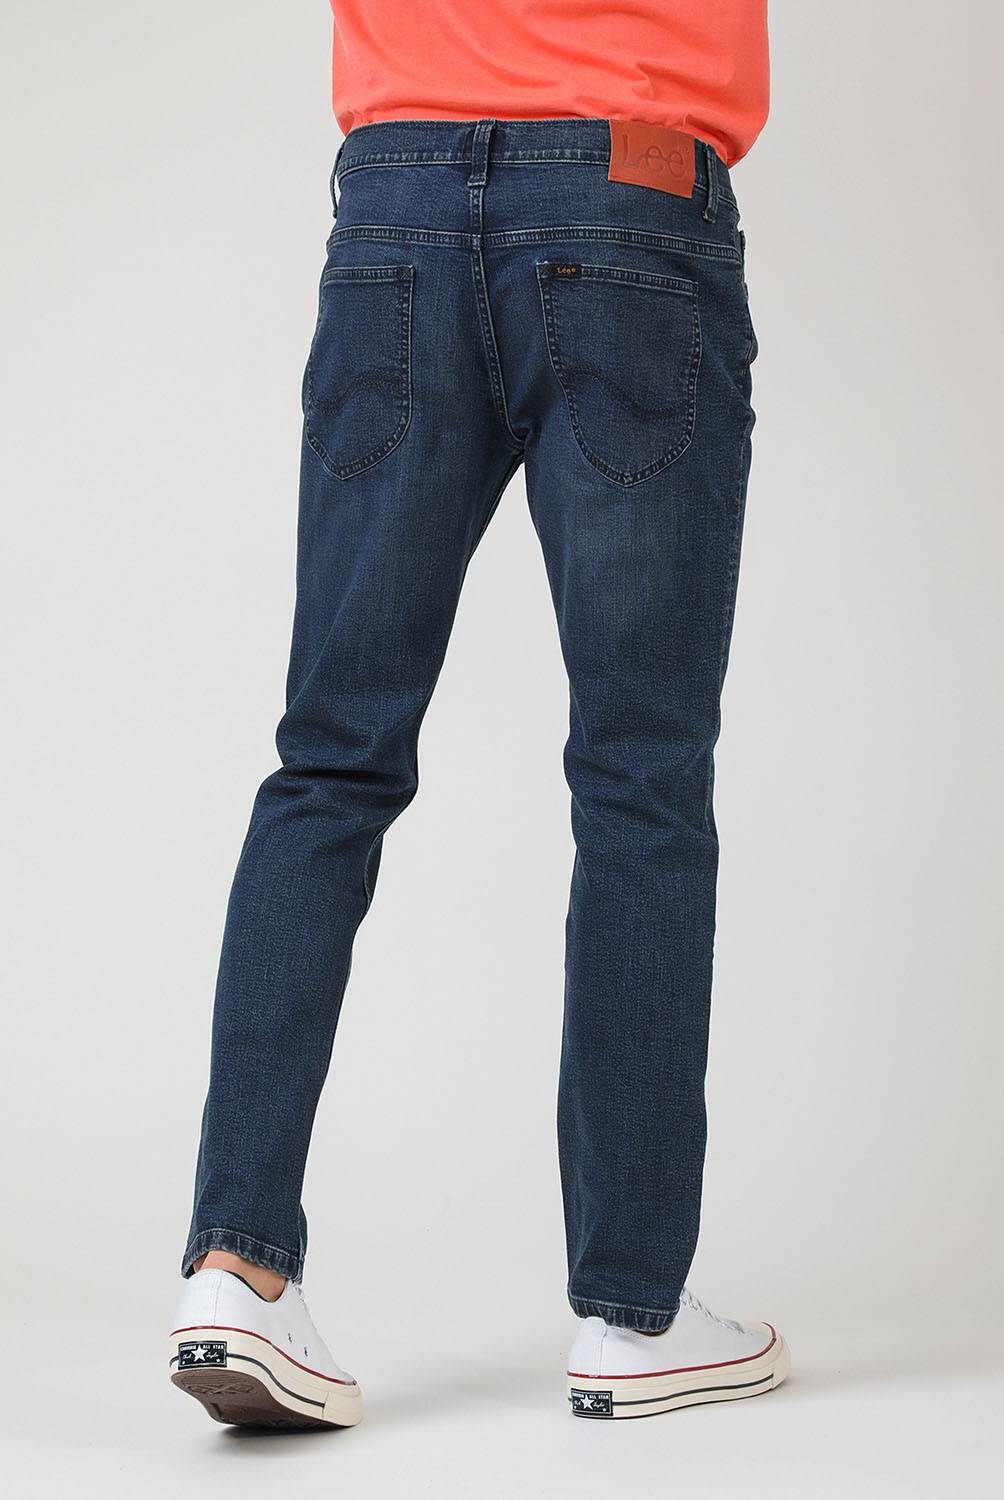 LEE Jeans Slim Fit Hombre Lee | falabella.com